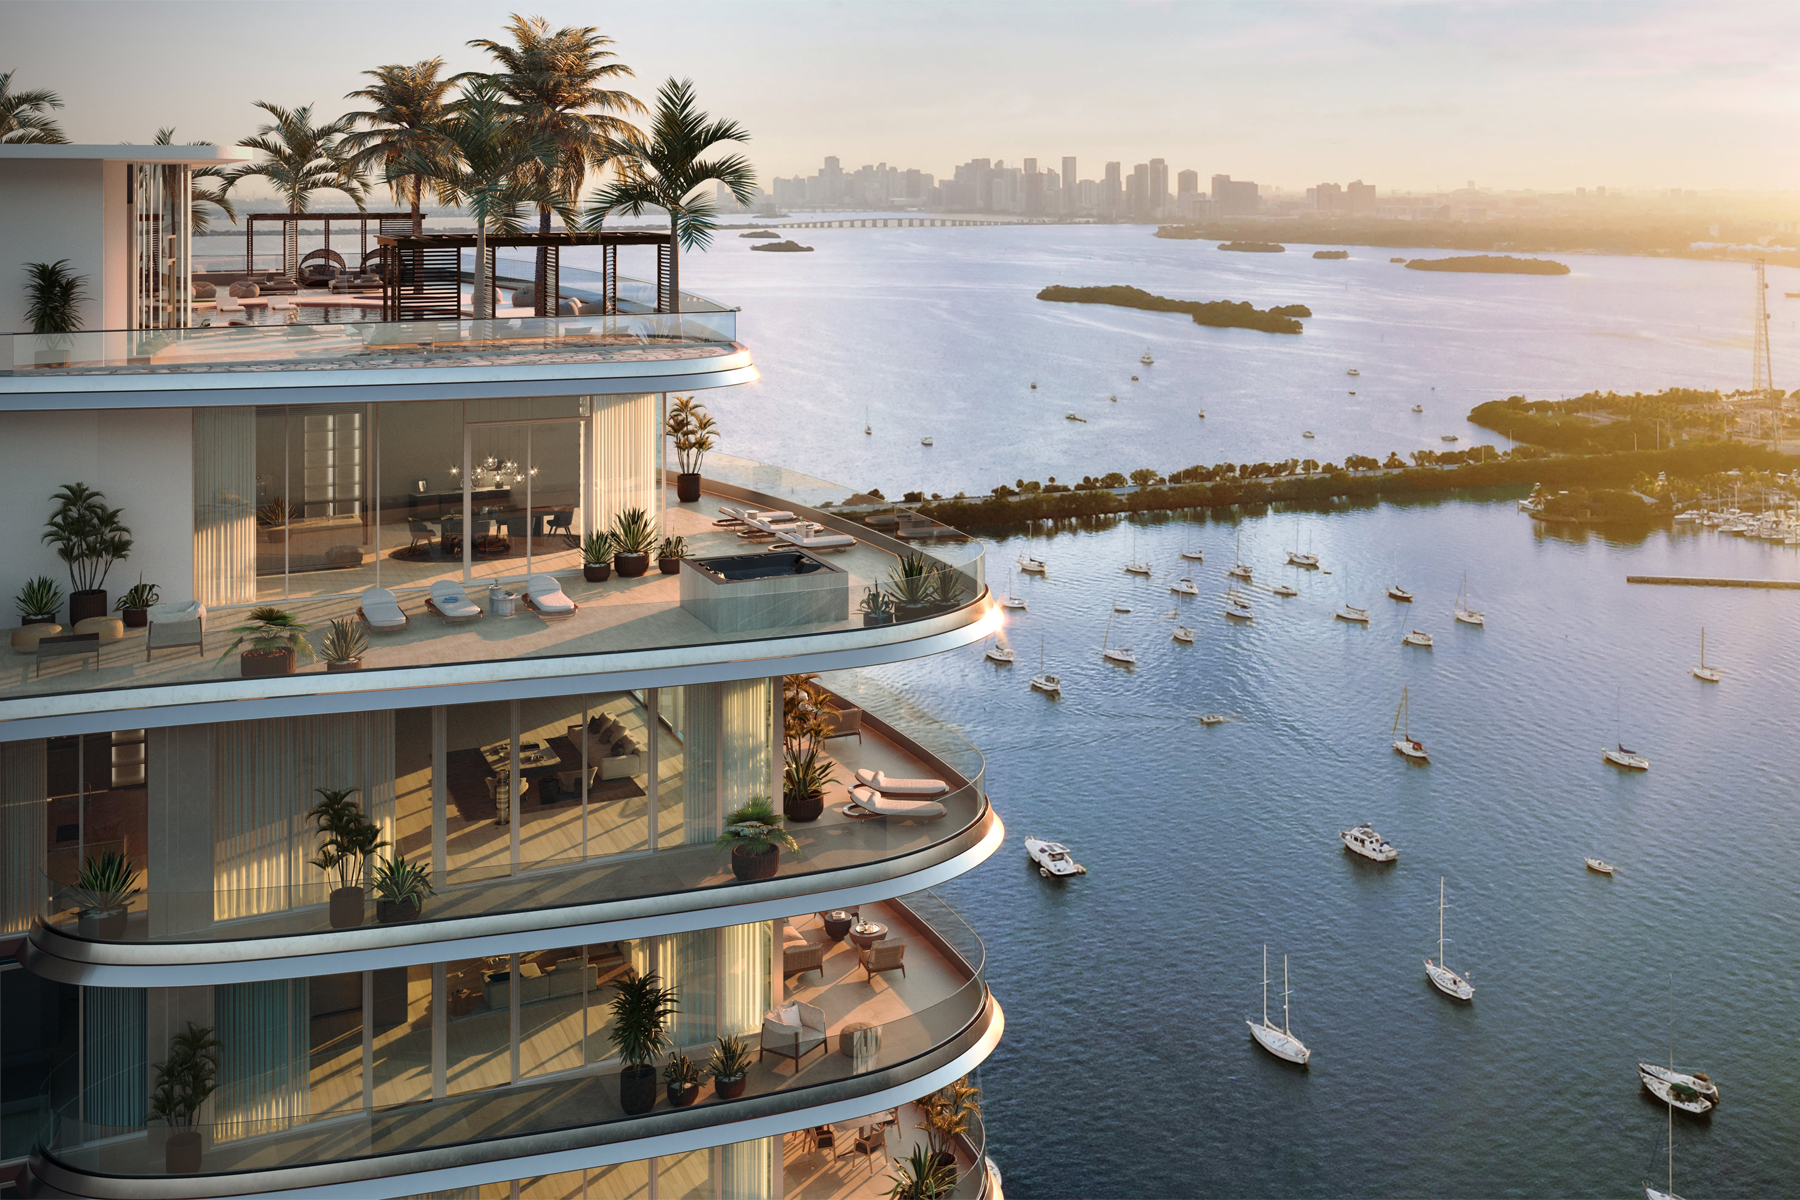 Pagani Residences Miami 2027